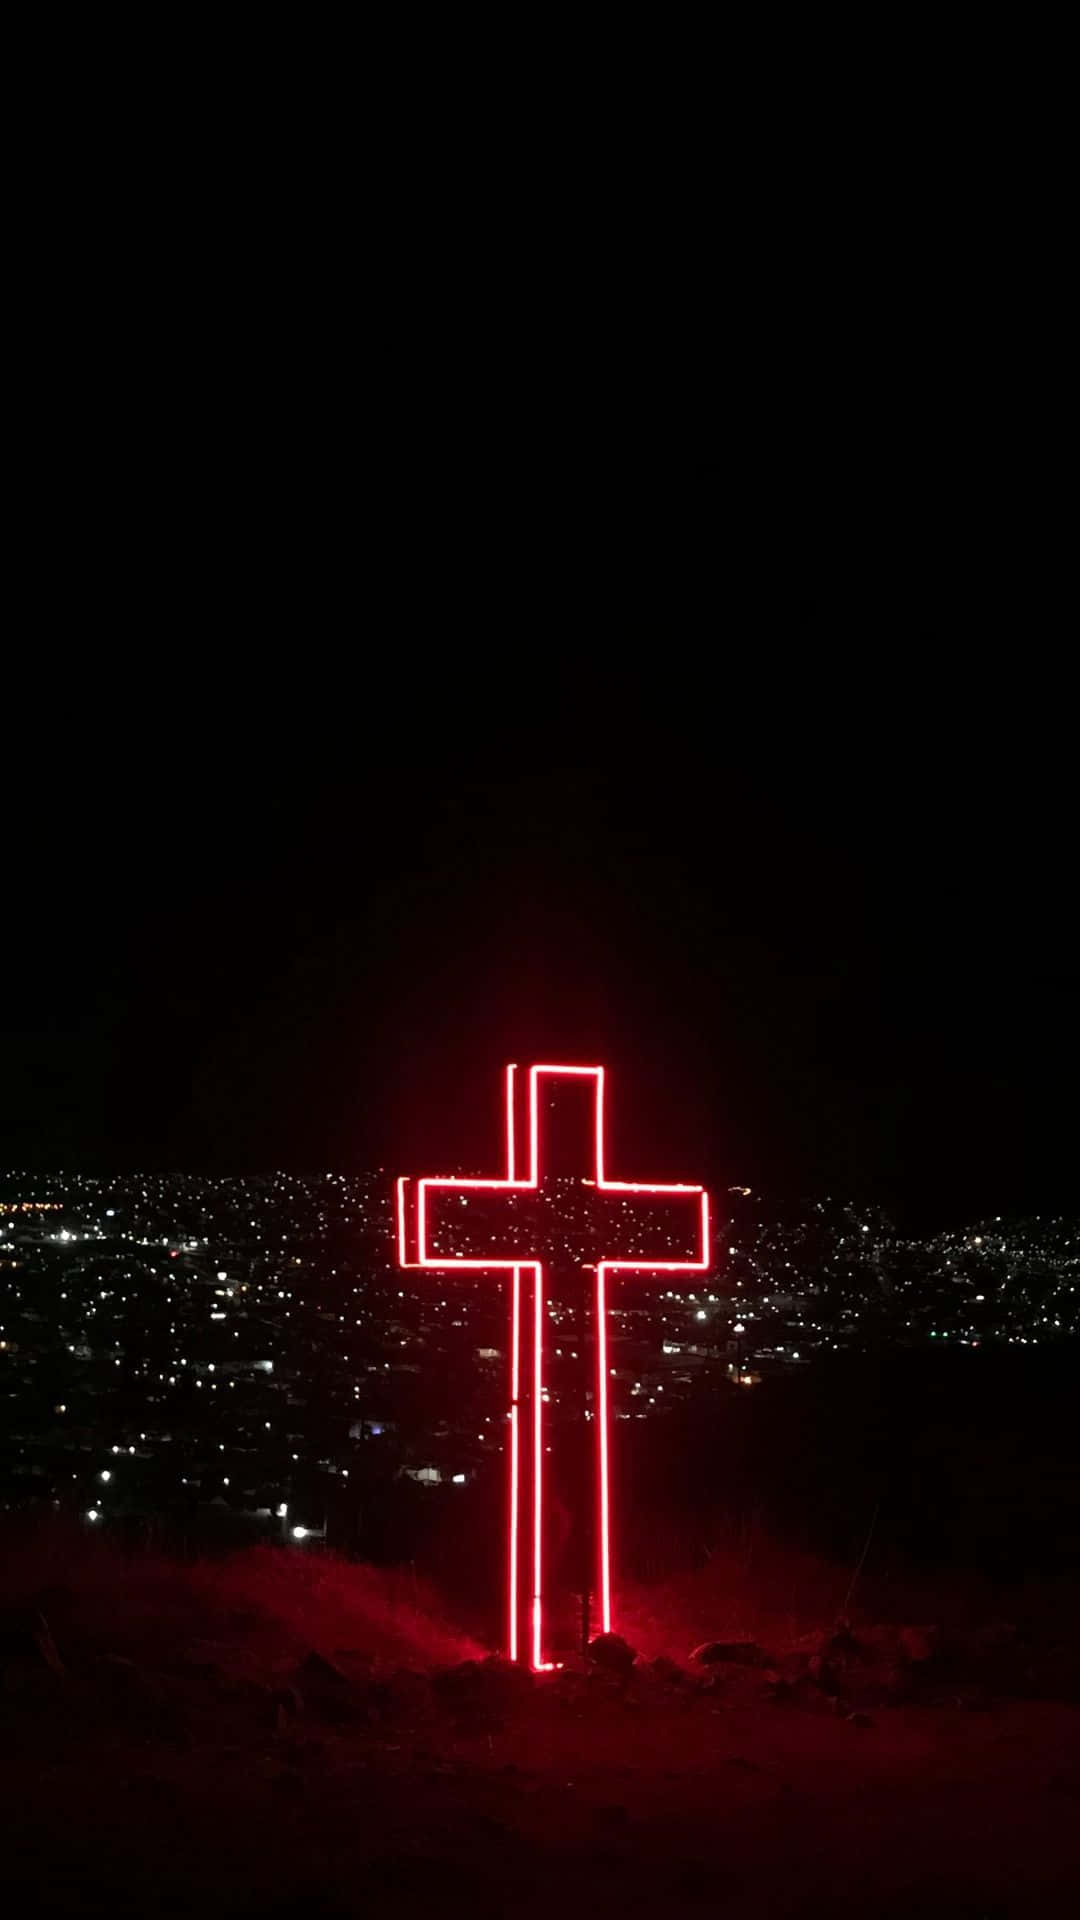 Et kors oplyst om natten i ørkenen. Wallpaper